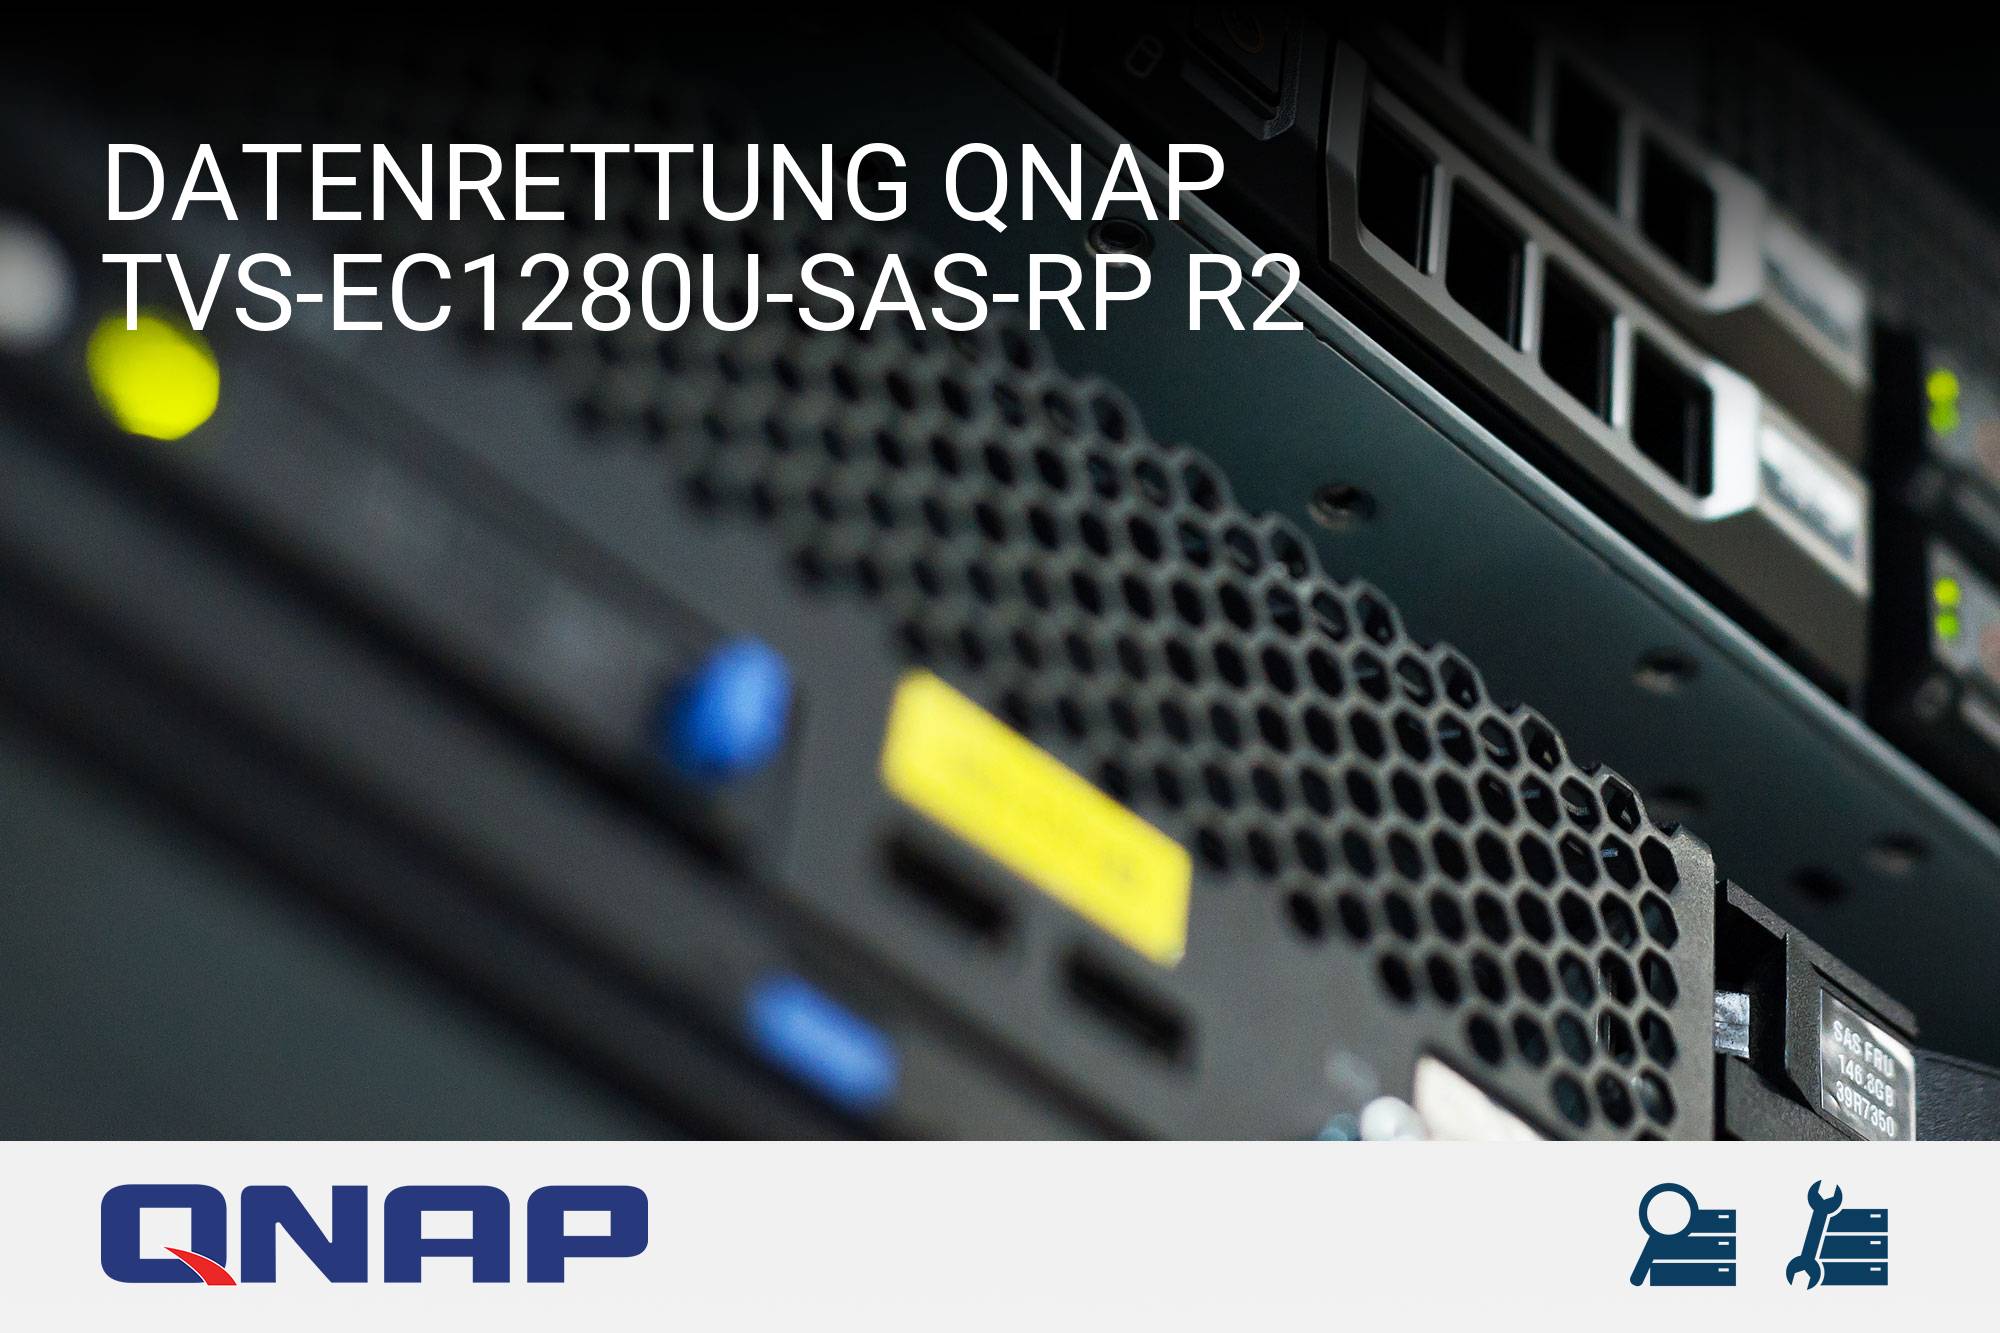 QNAP TVS-EC1280U-SAS-RP R2